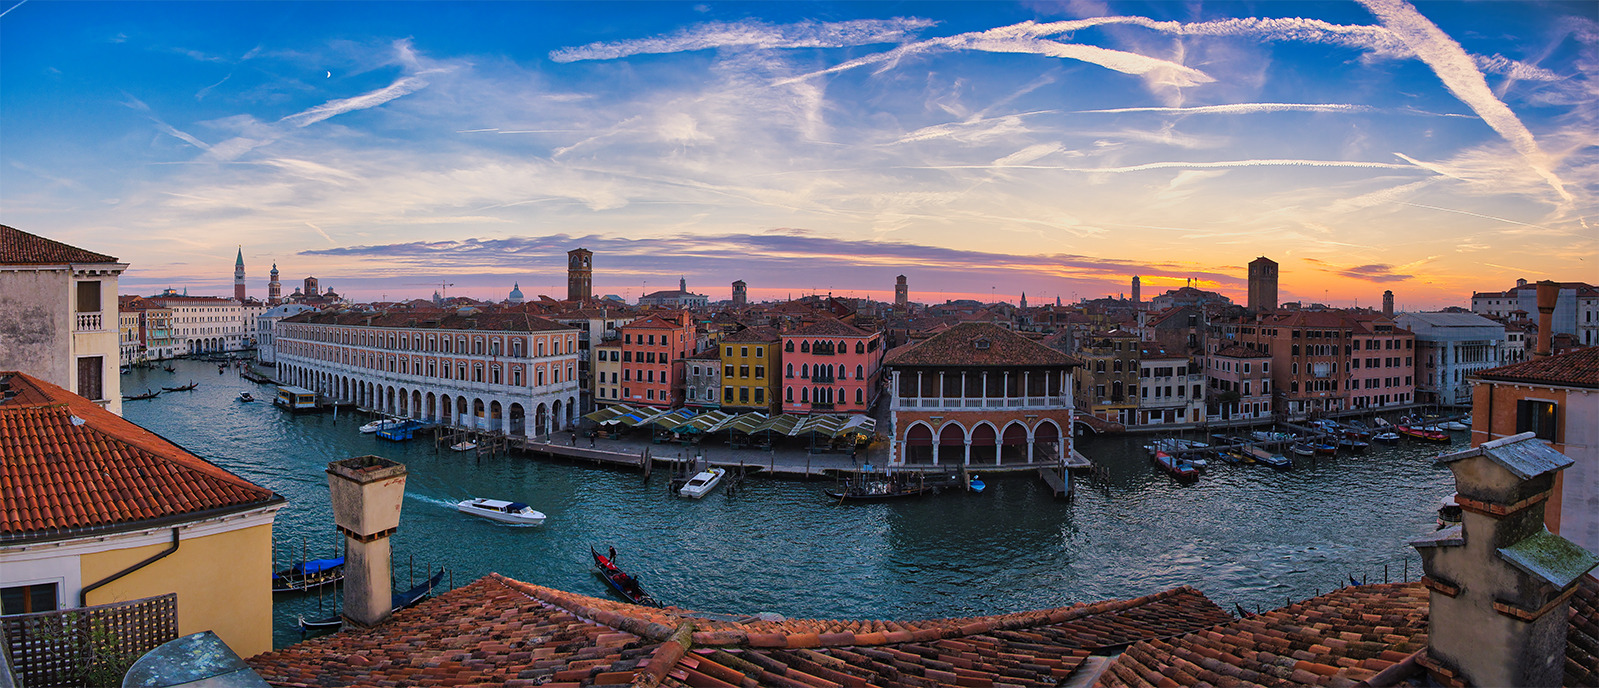 Venedig mit Blick auf den Kanal Grande